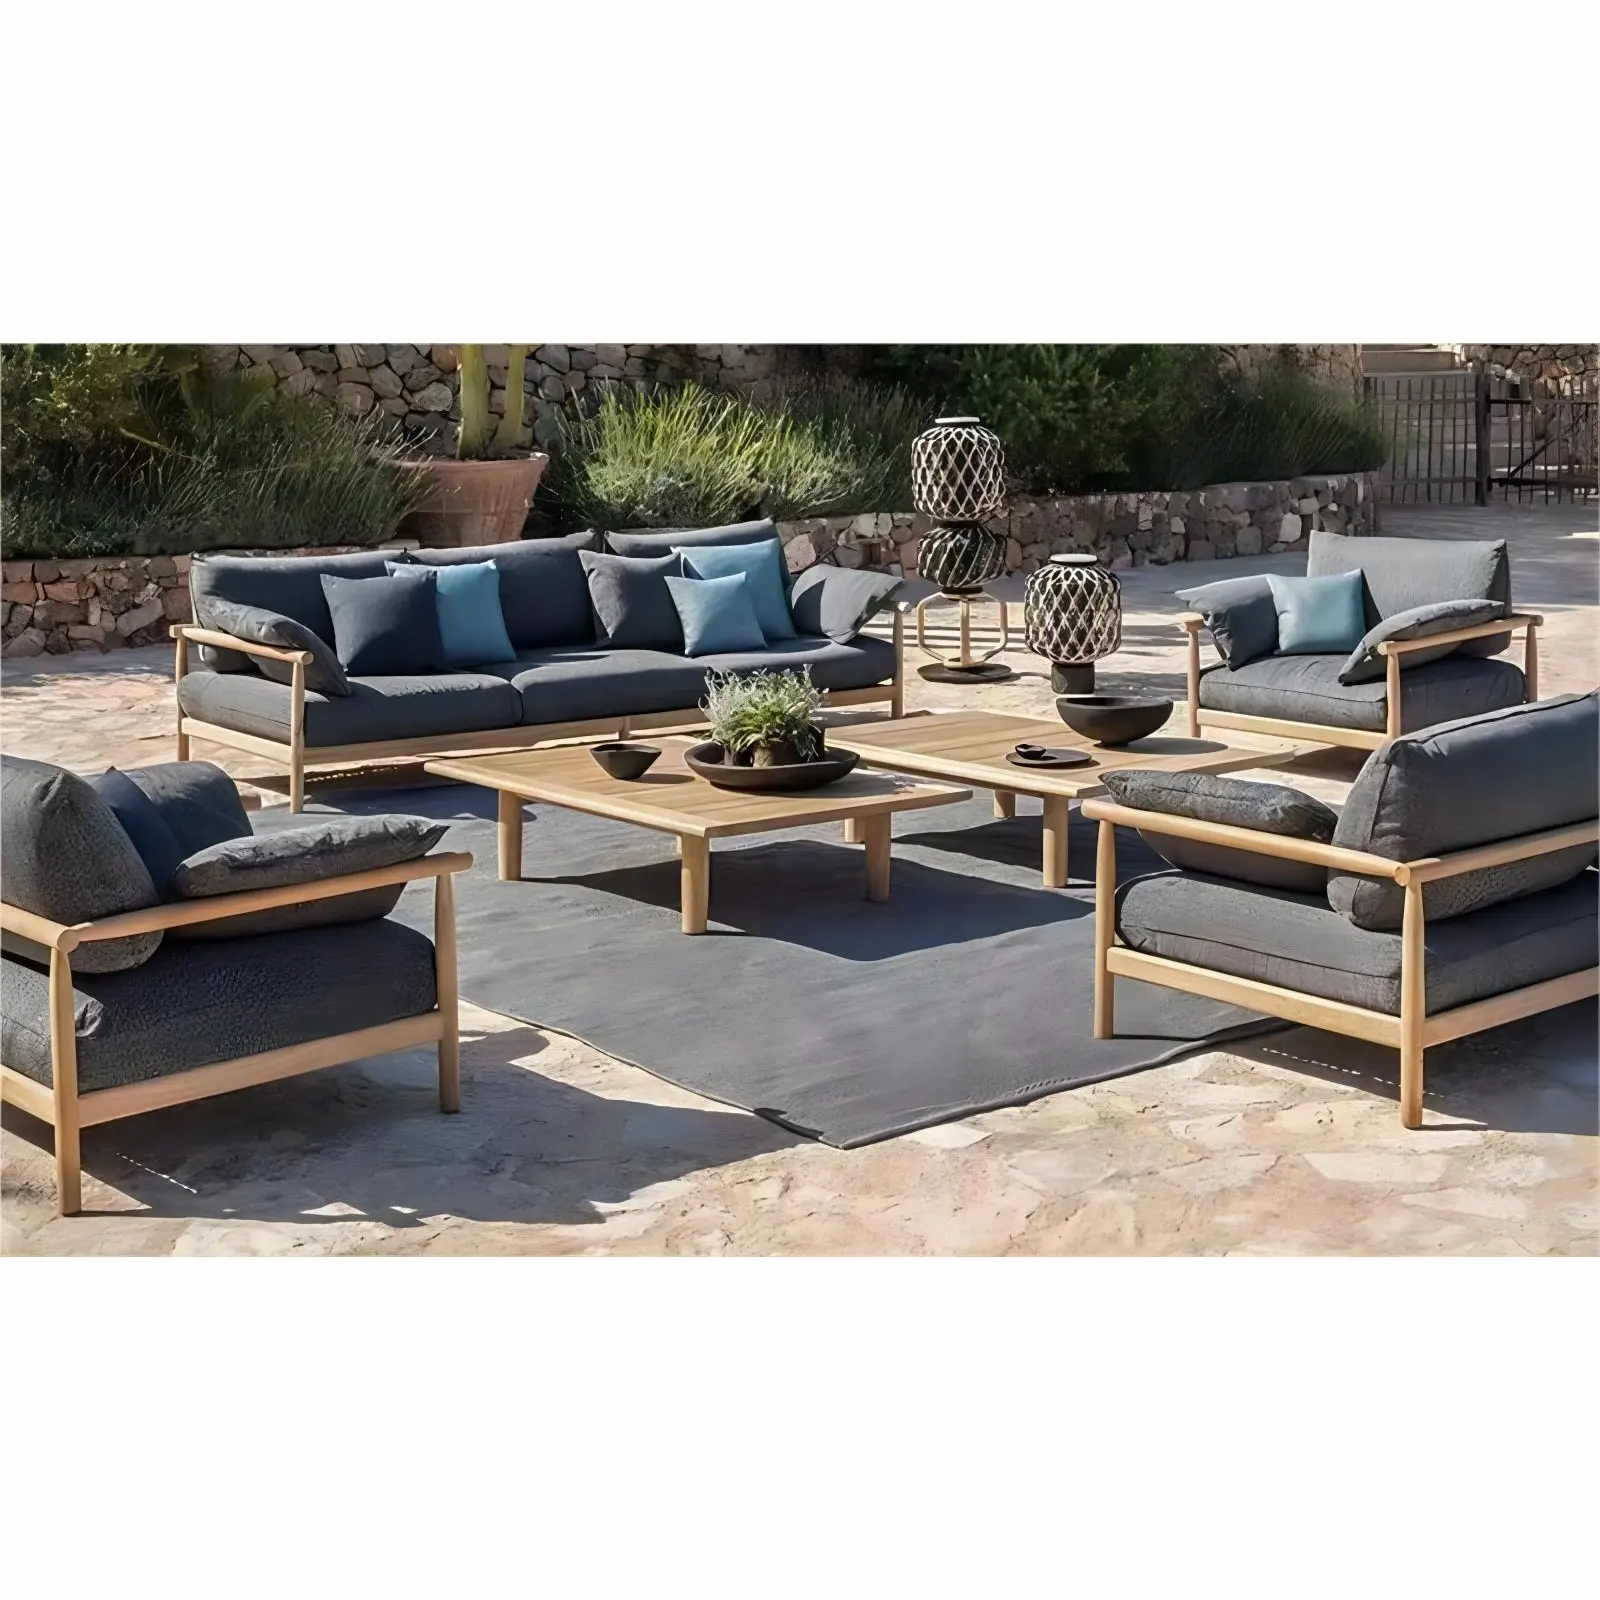 Moderno di alta qualità poltrona da giardino divano set mobili componibile per tutte le stagioni patio in legno solido teak da esterno